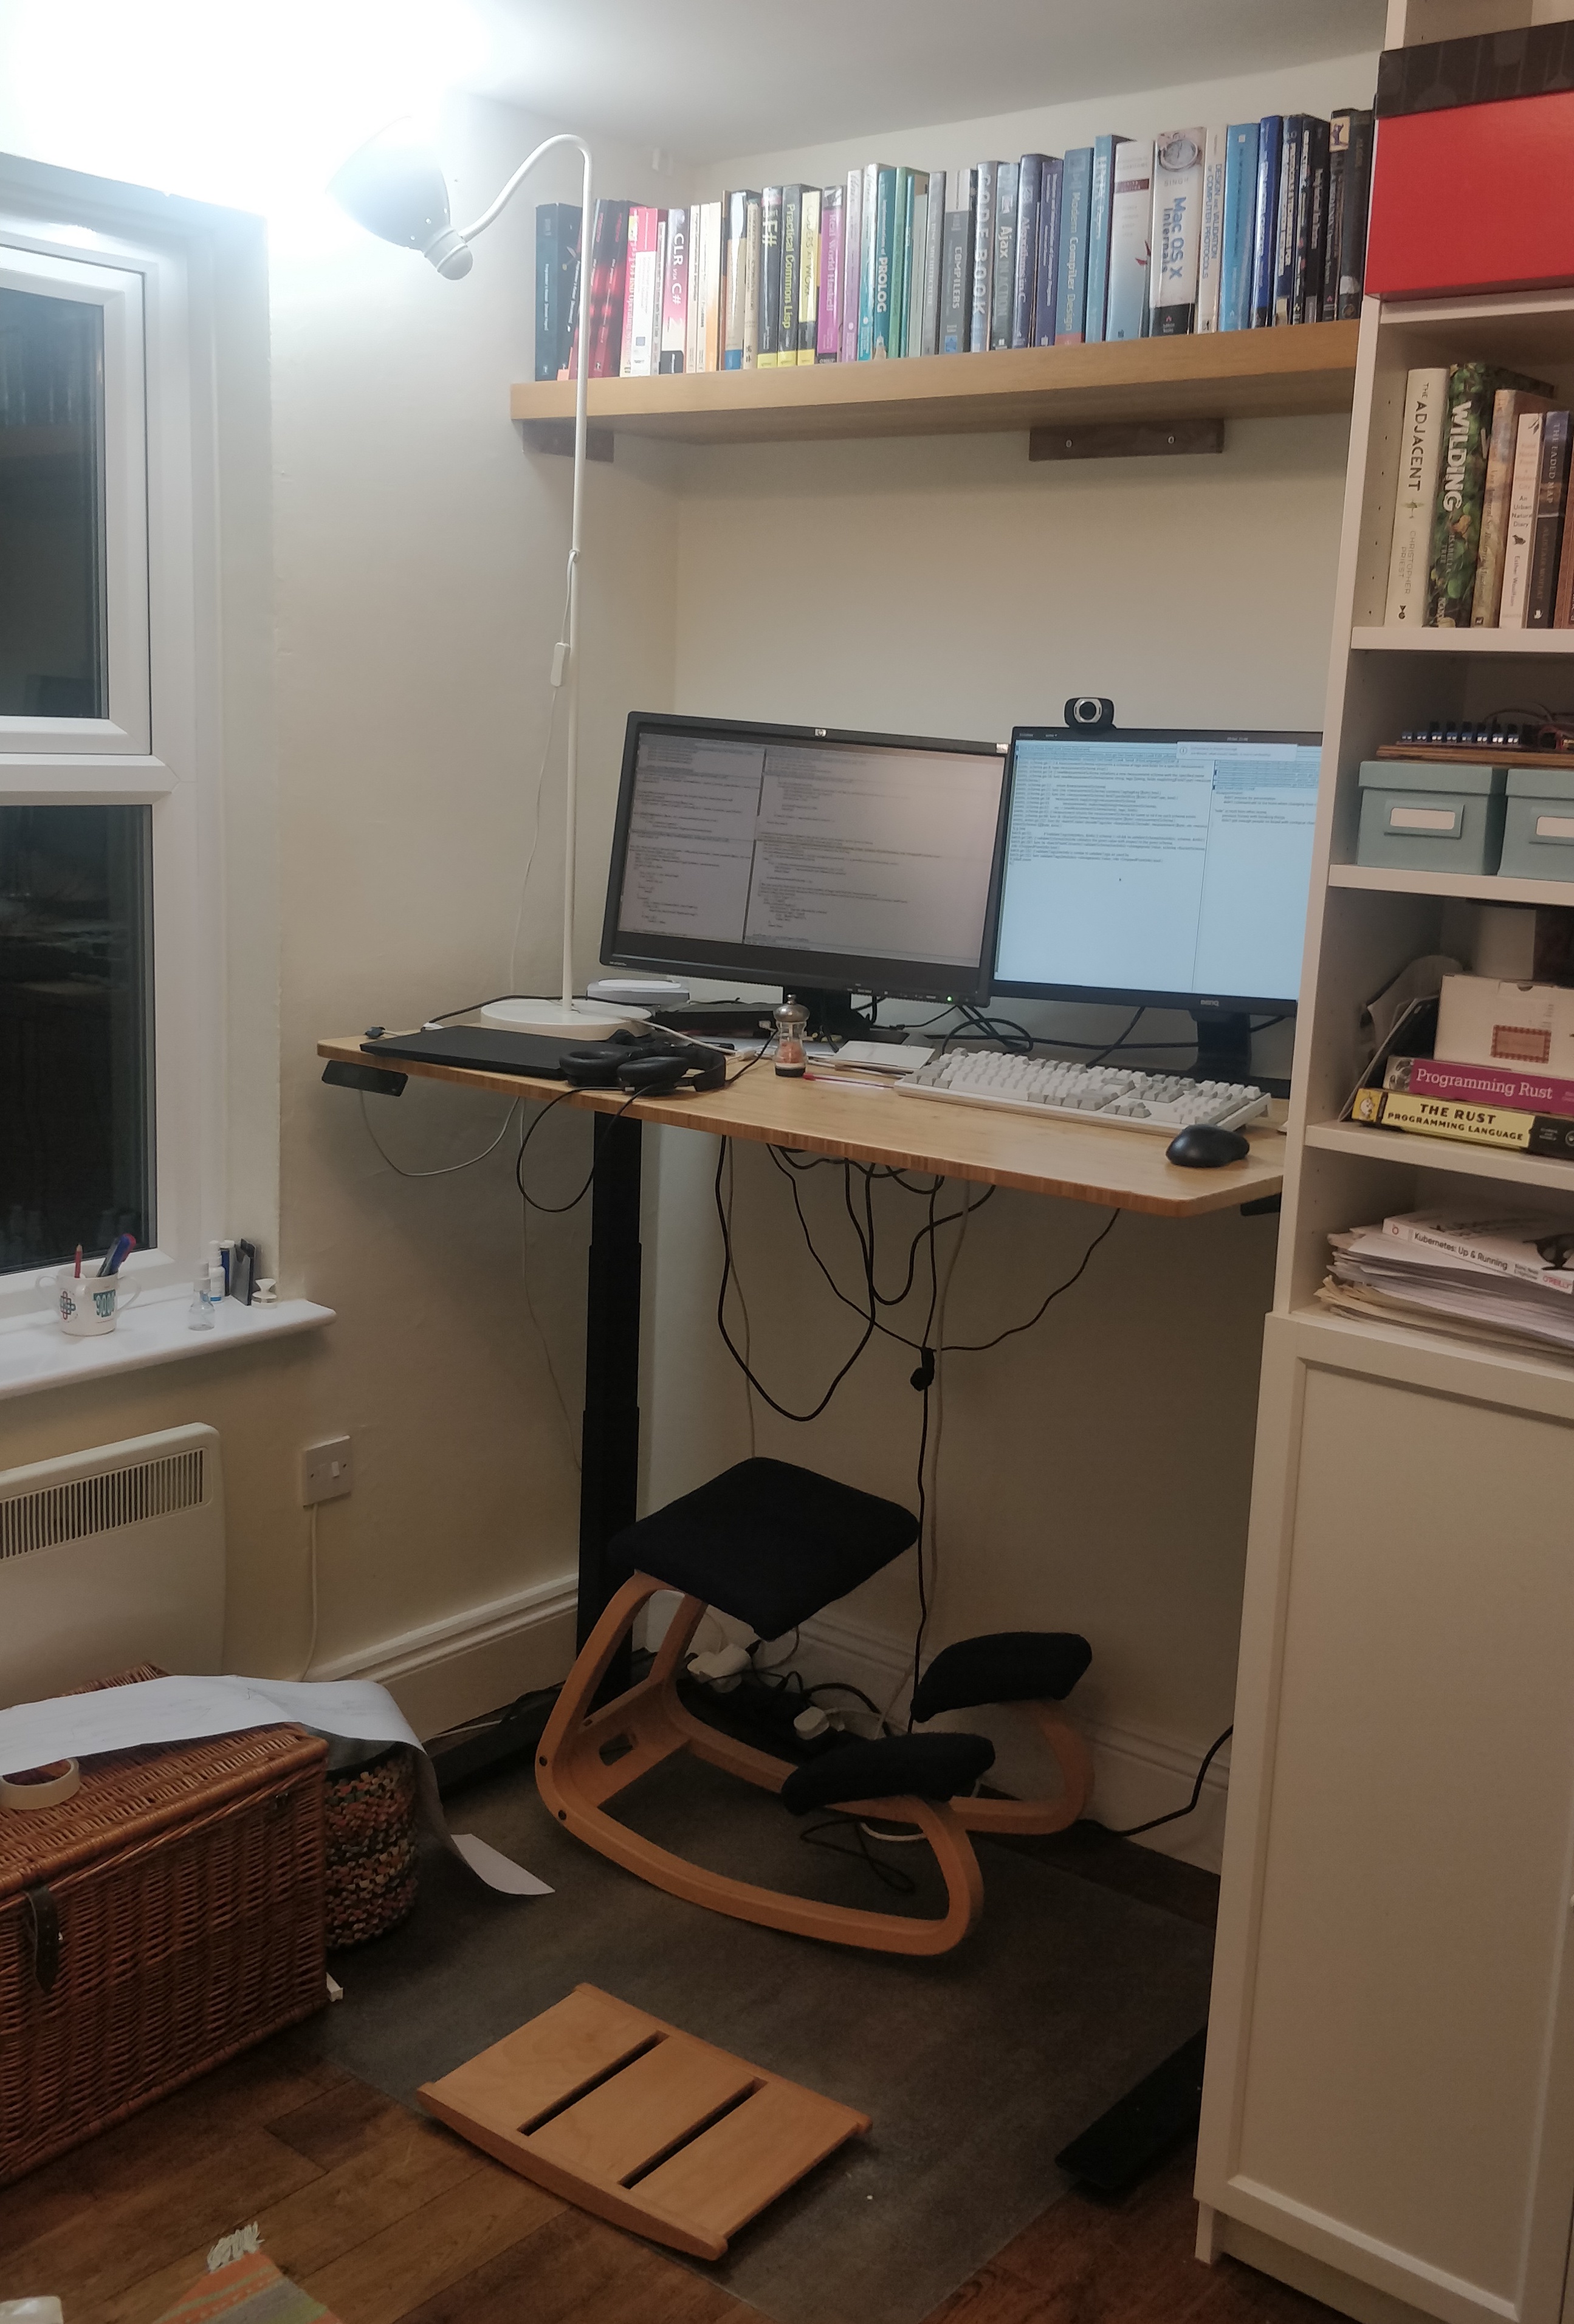 Rog's current desk setup